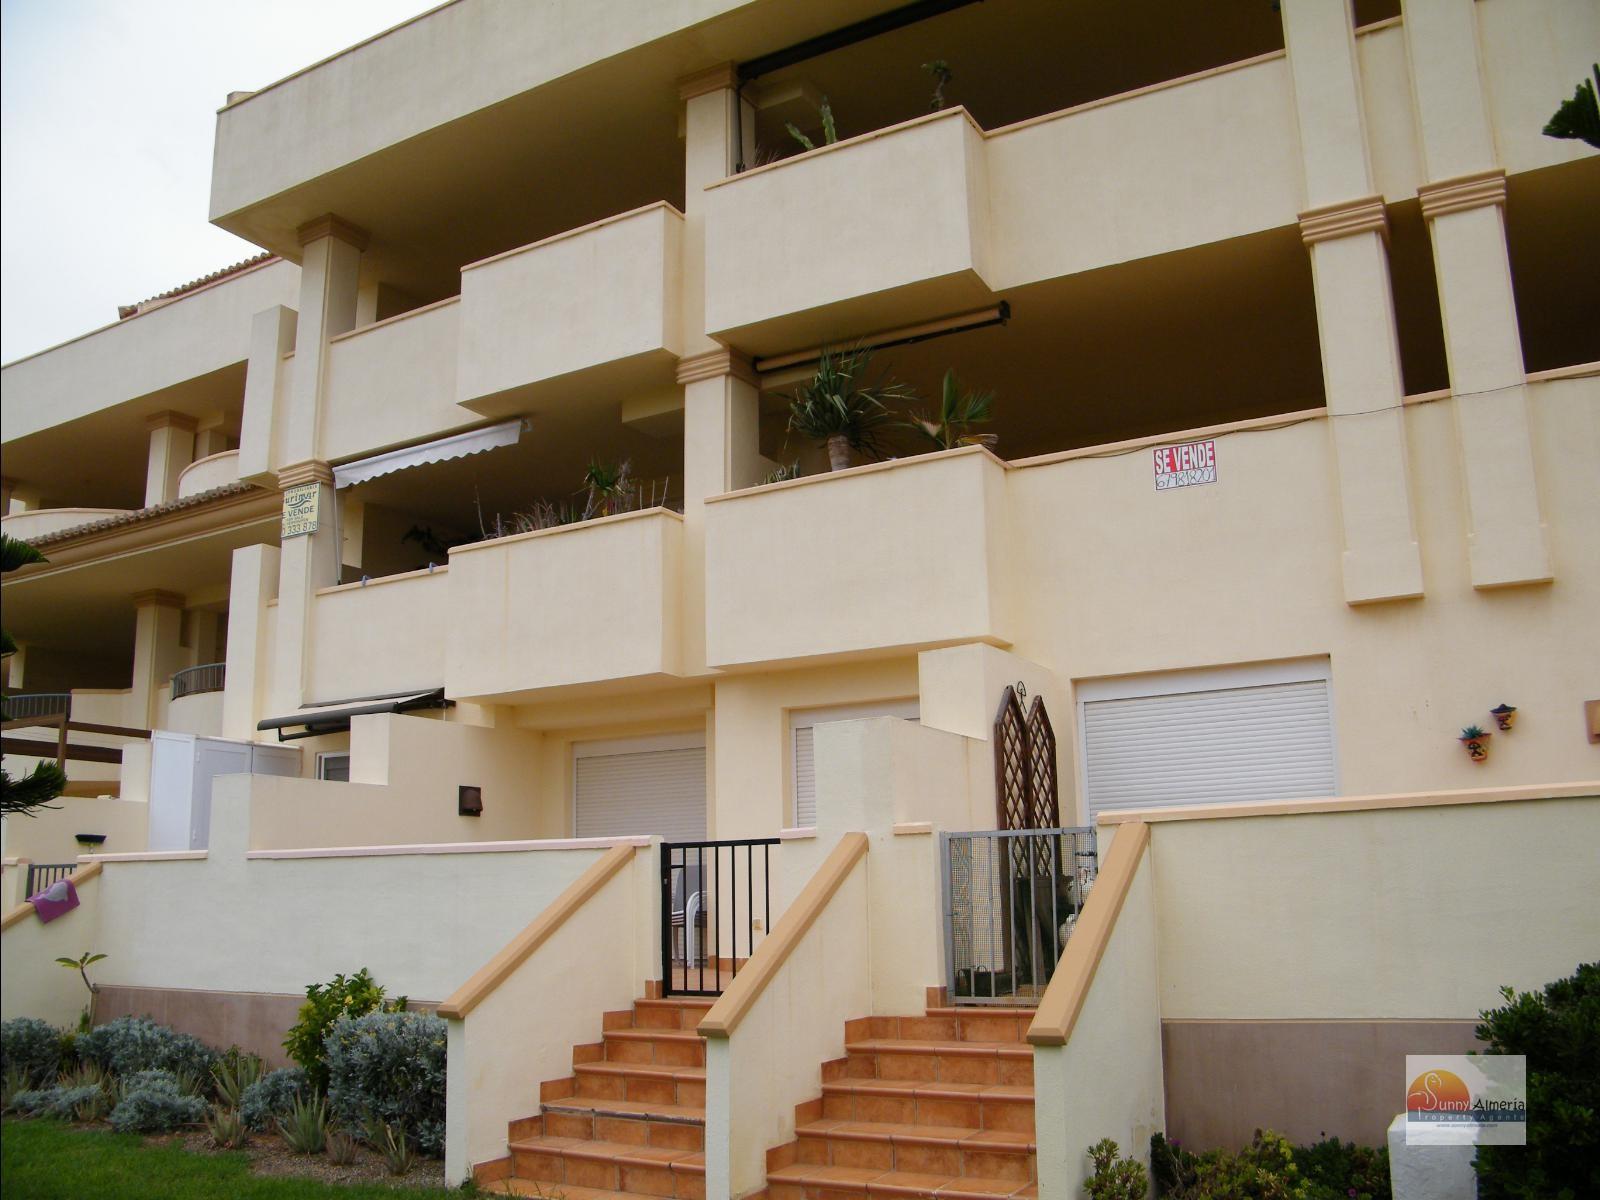 Luxury Apartment for rent in Calle Fosforito 4 (Roquetas de Mar), 900 €/month (Season)